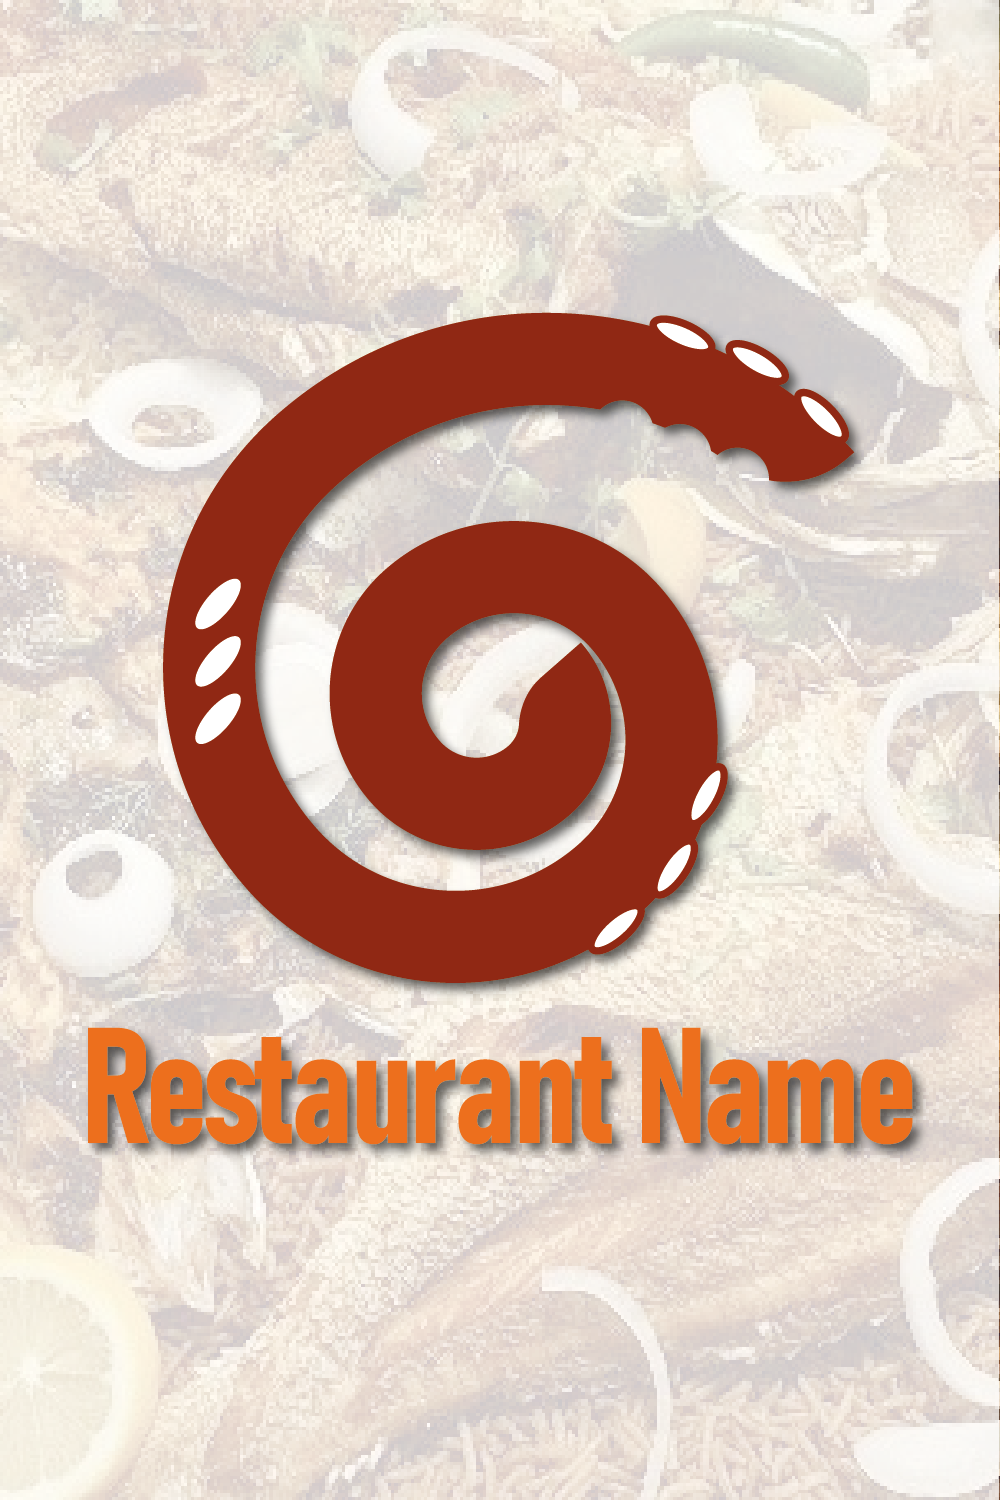 Restaurant logo pinterest preview image.